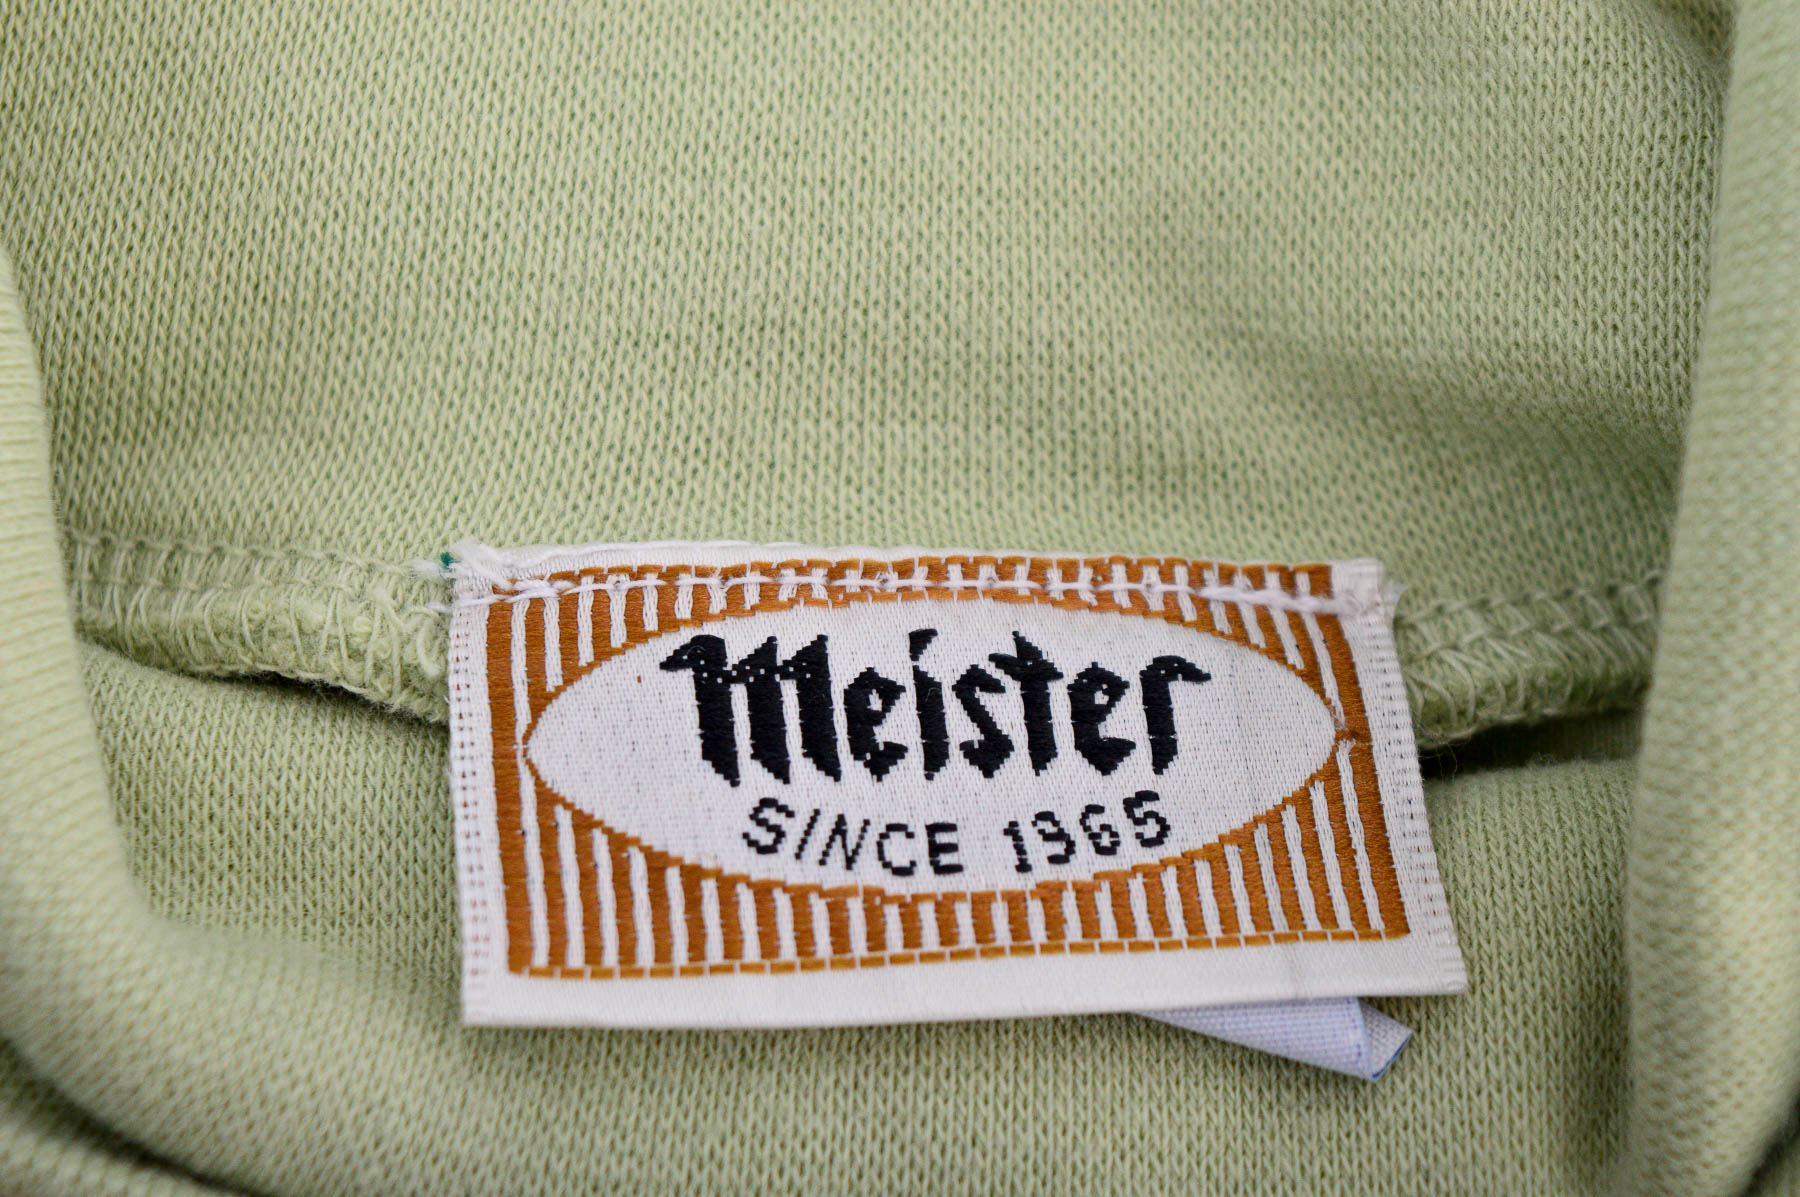 Γυναικεία μπλούζα - Mister Since 1965 - 2